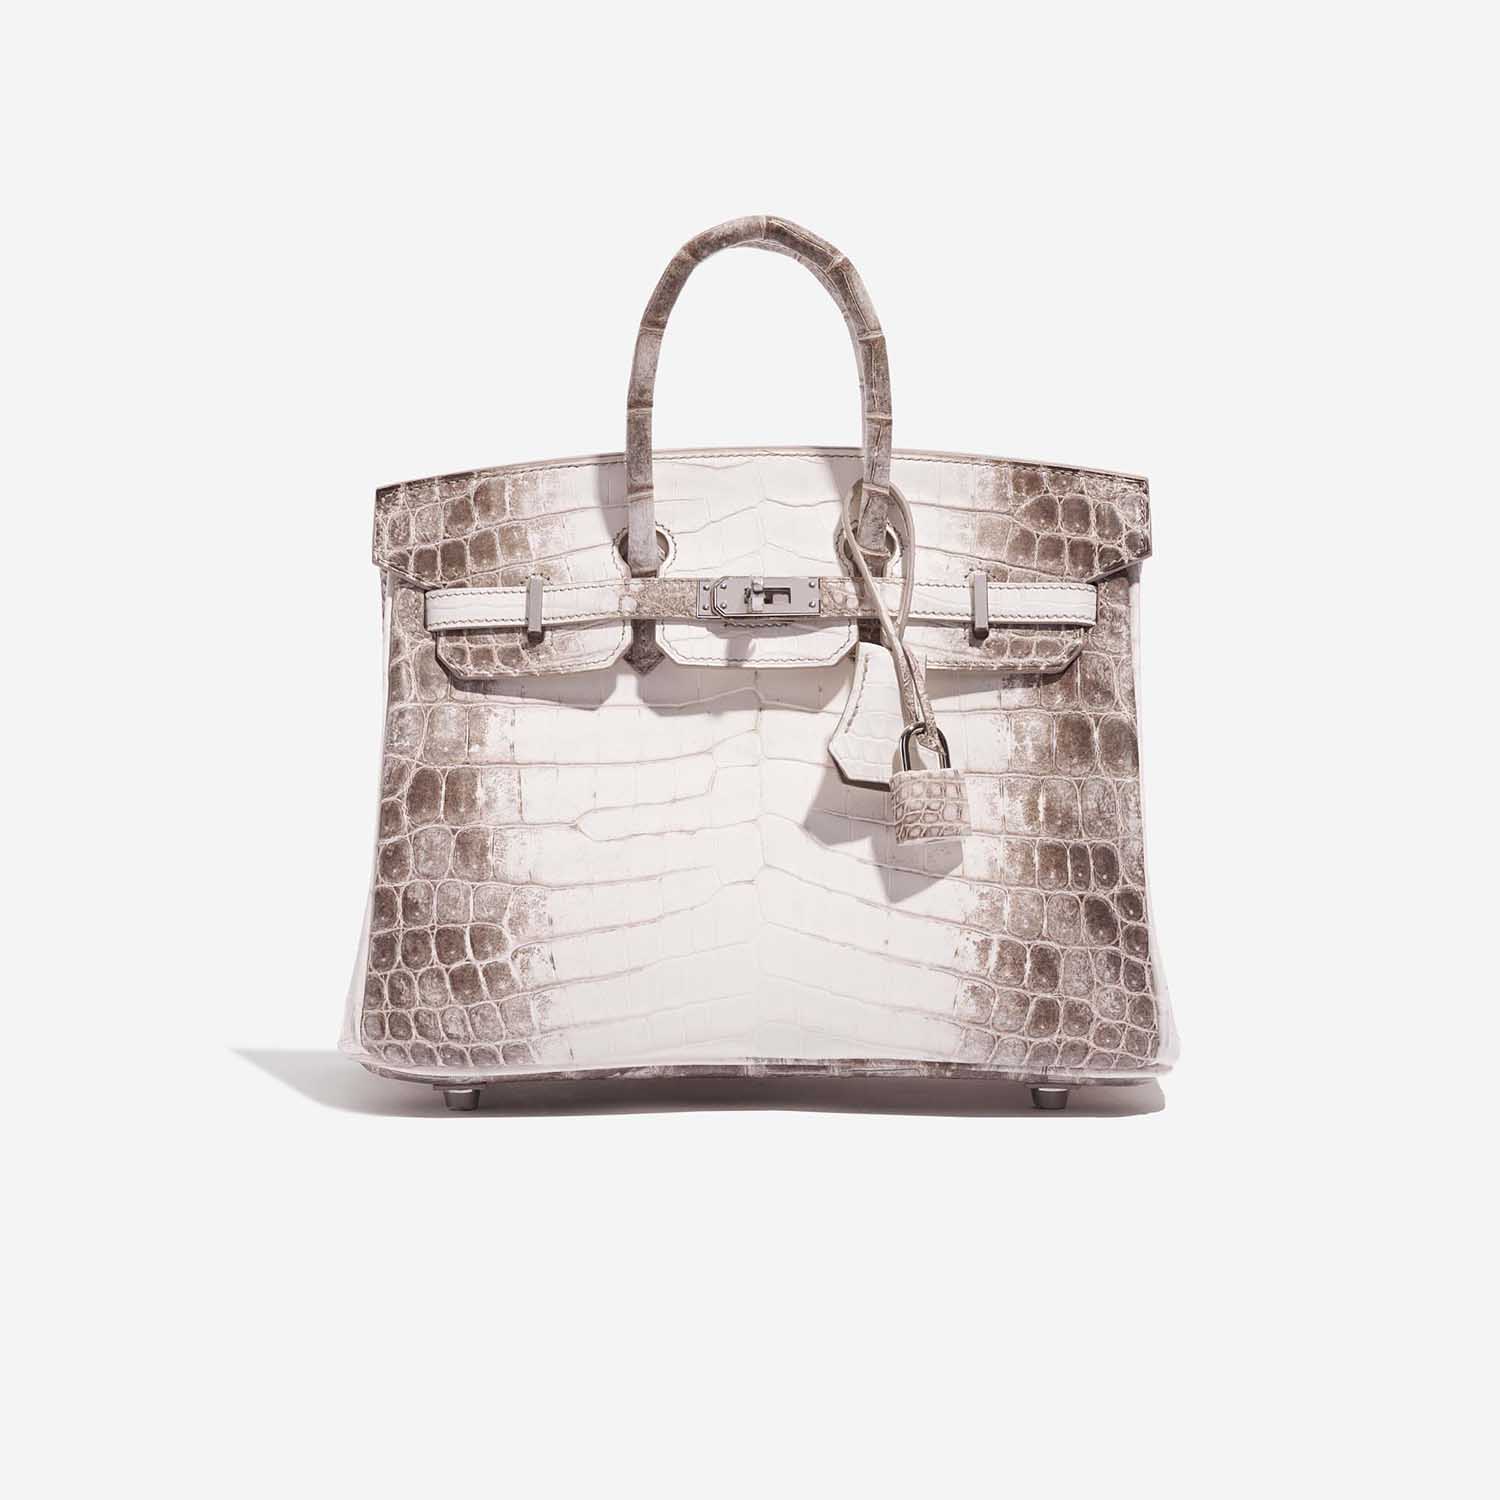 Pre-owned Hermès Tasche Birkin 25 Niloticus Crocodile Himalaya Blanc Brown, White Front | Verkaufen Sie Ihre Designer-Tasche auf Saclab.com